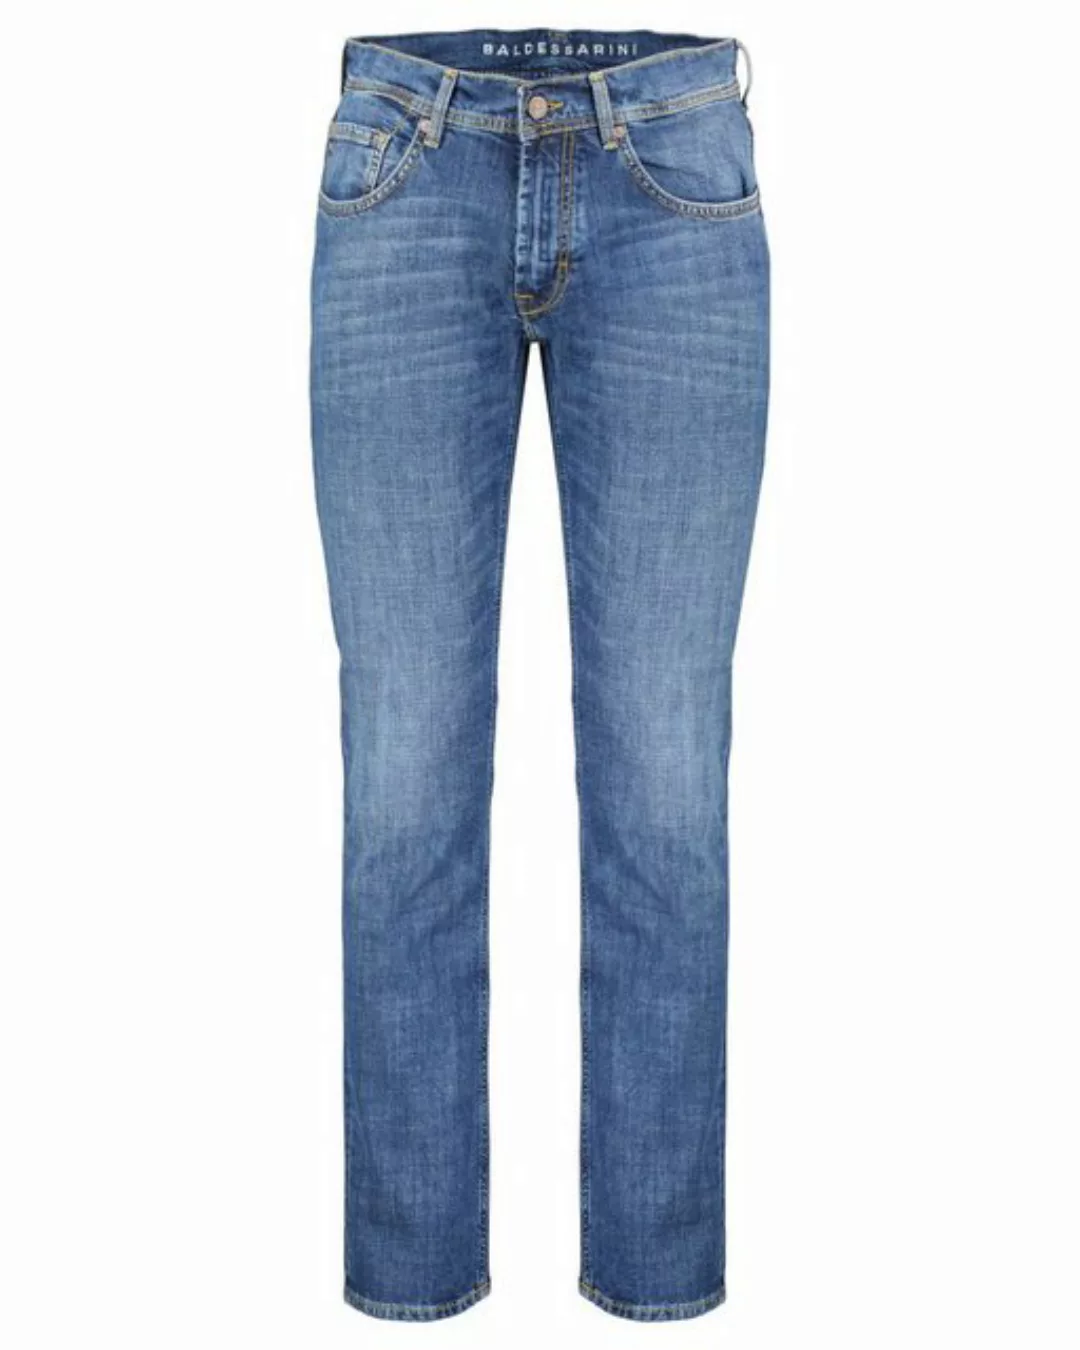 BALDESSARINI Jeans dunkelblau B1 16502.1212/6837 günstig online kaufen